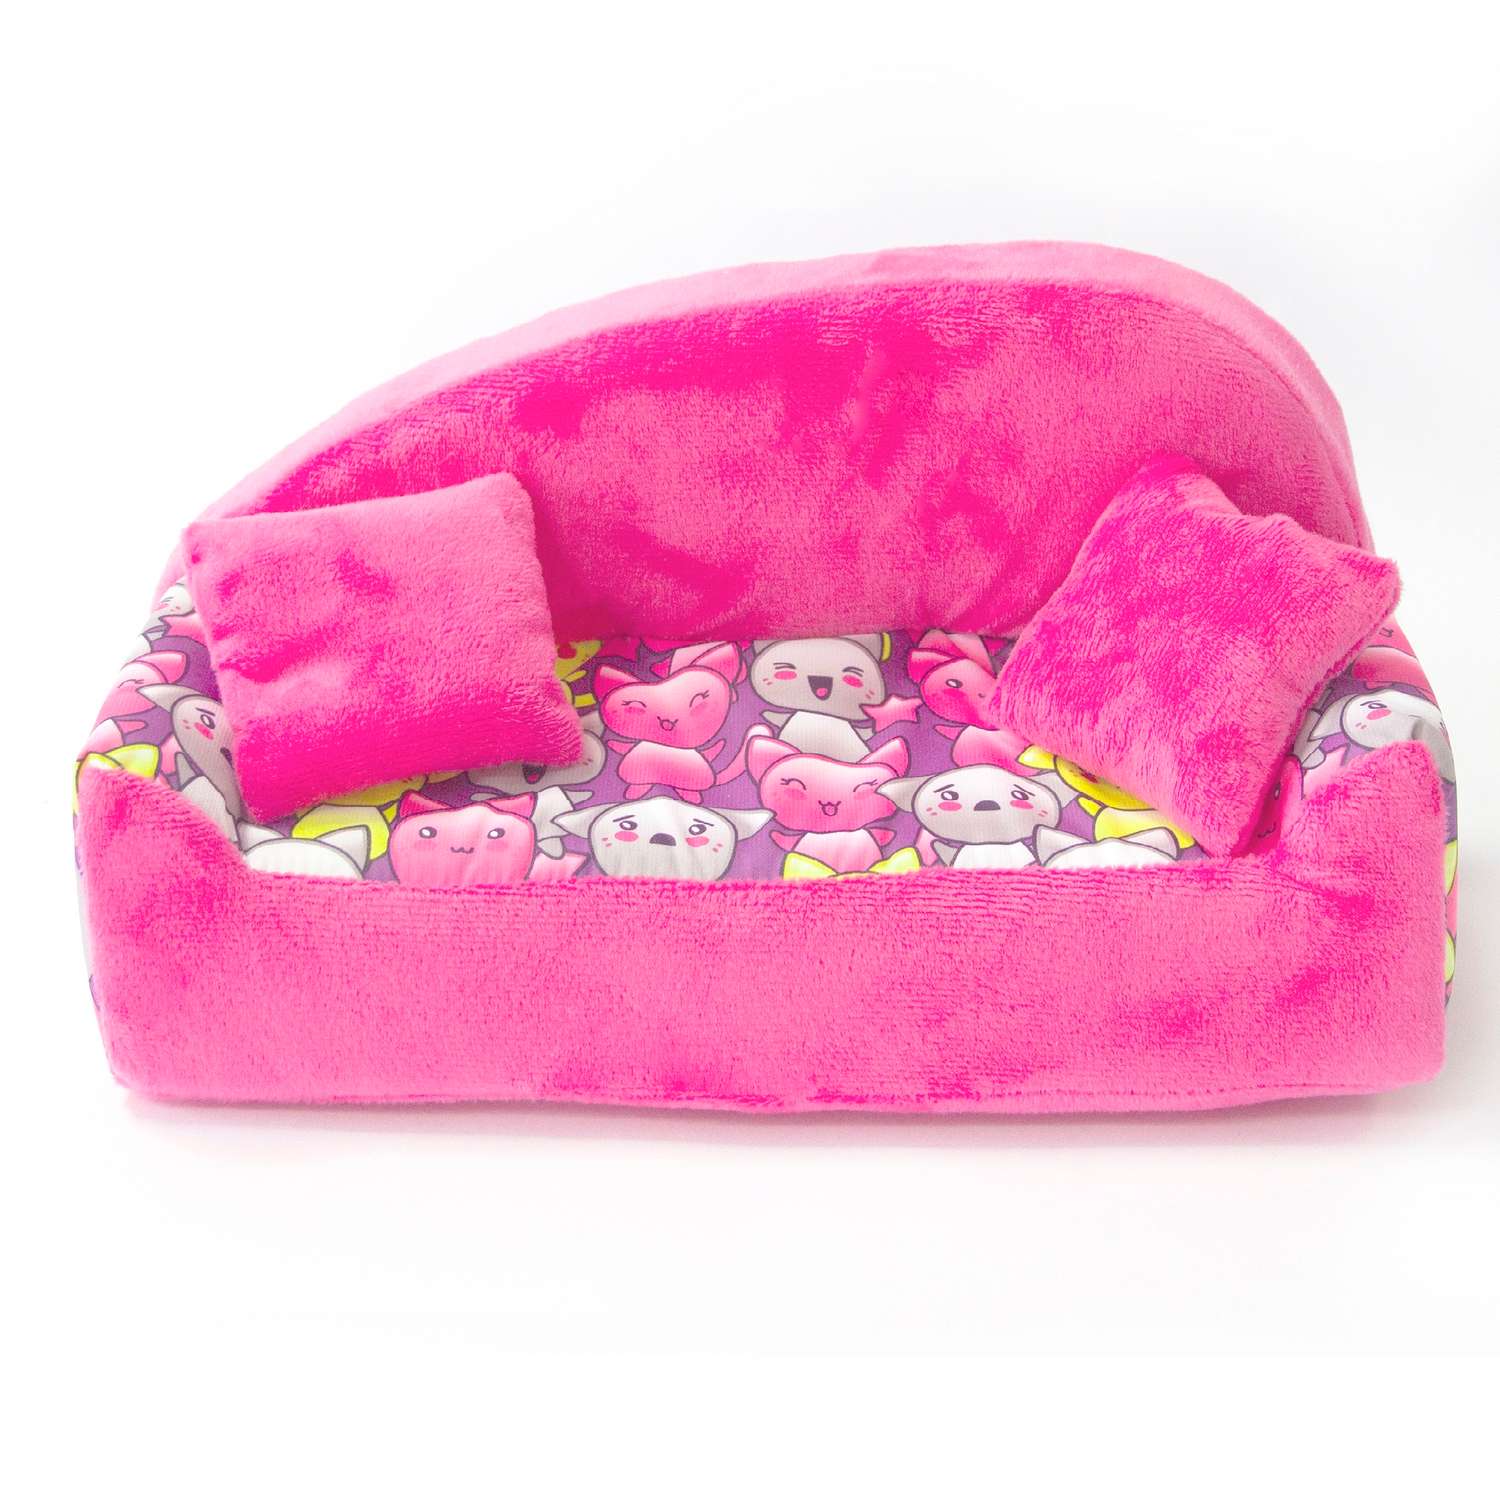 Набор мебели для кукол Belon familia Принт хор котят фиолетовый диван с круглой спинкой 2 подушки НМ-002/1-33 - фото 1